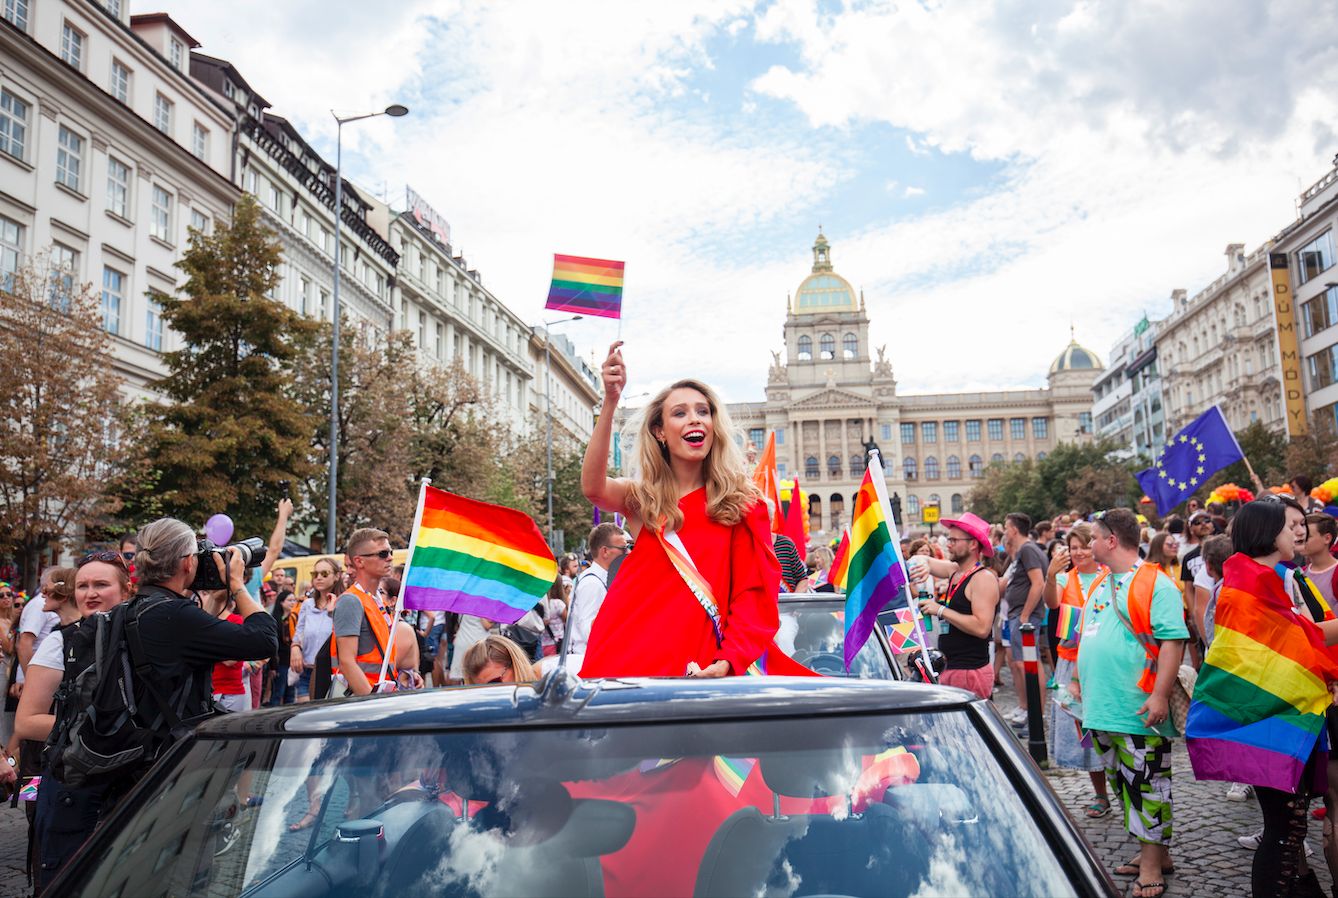 Policisté chodí hlídat Prague Pride rádi, ve vzduchu se vznáší láska, říká mluvčí festivalu